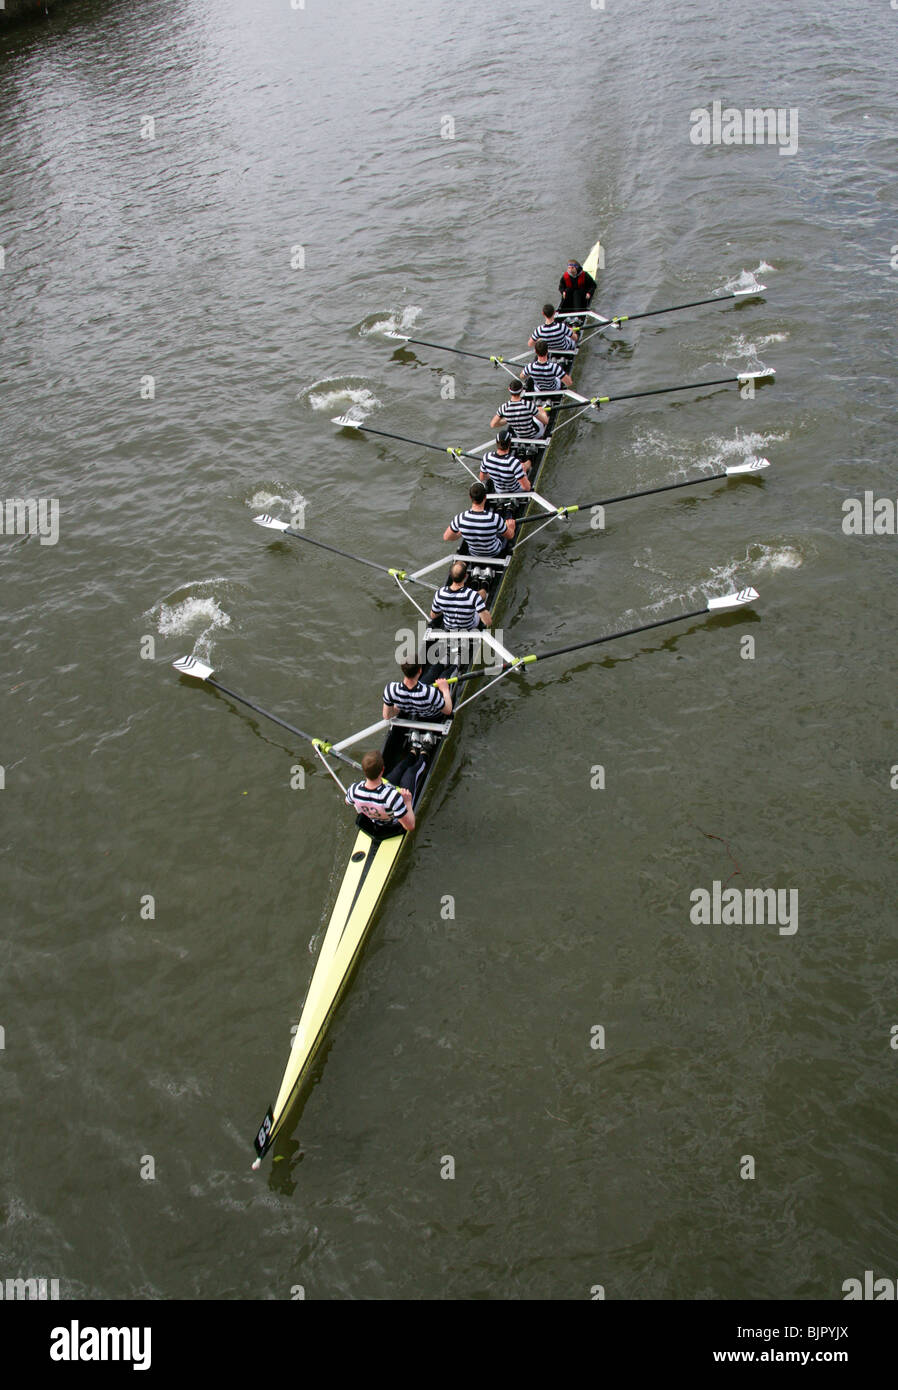 L'Università di Dublino Rowing Team in testa del Fiume Race 2010. La loro posizione finale è stato 136fuori 400 concorrenti. Foto Stock